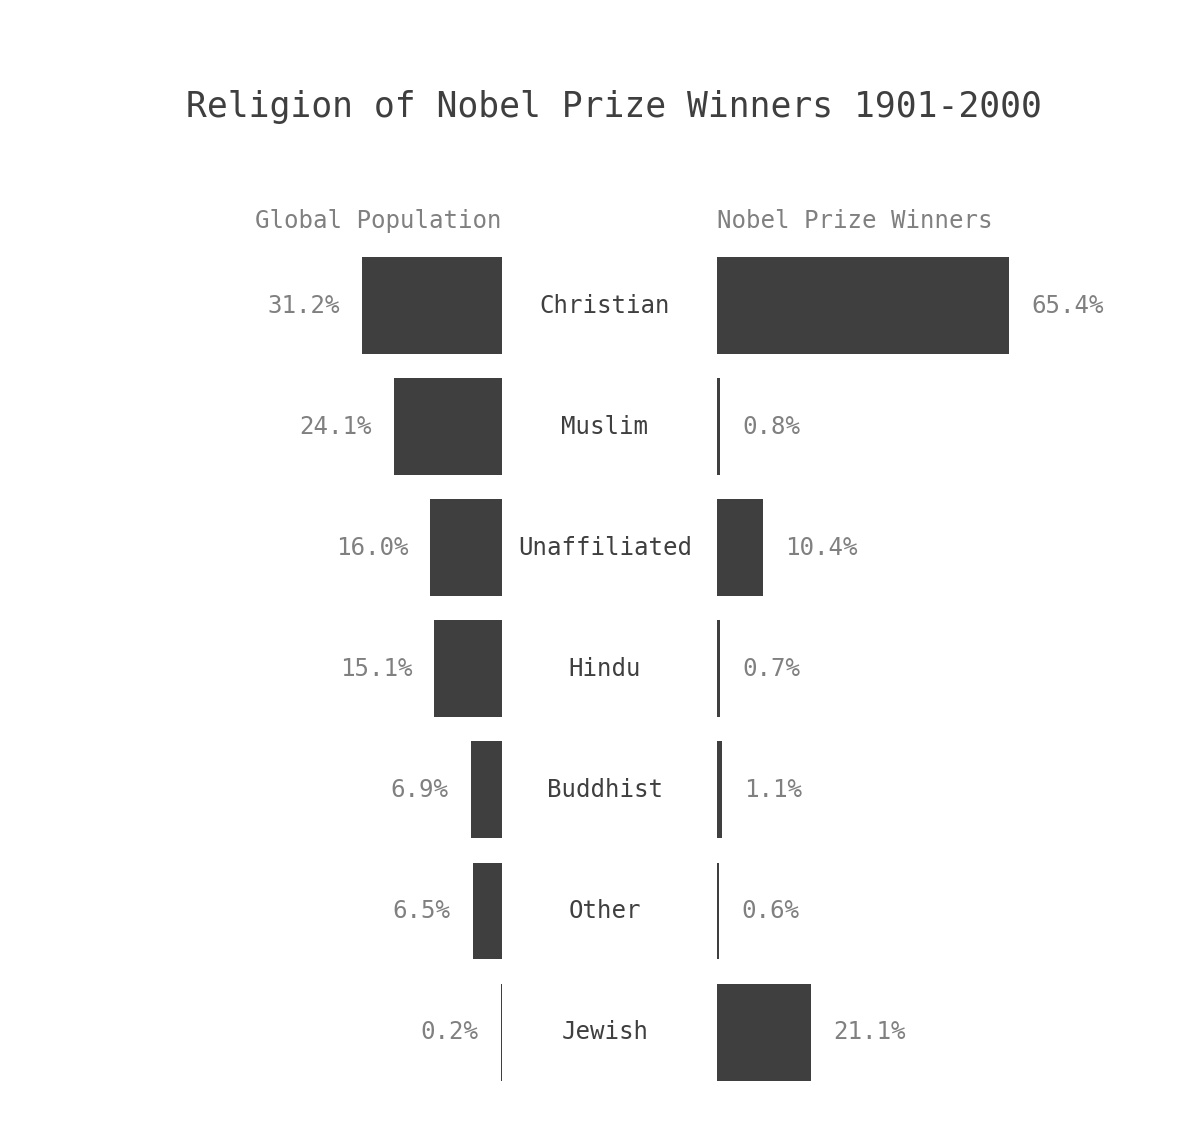 Nobel ödülü kazananların dini inançları:

Yahudiler nüfusun %0.2'sini oluştururken Nobel kazananların %21'ini oluşturuyor.

Müslümanlar nüfusun %24'ünü oluştururken Nobel kazananların yalnızca %0.8'ini oluşturuyor.

Ateistler ise kazananların %10.5'ini oluşturuyor.